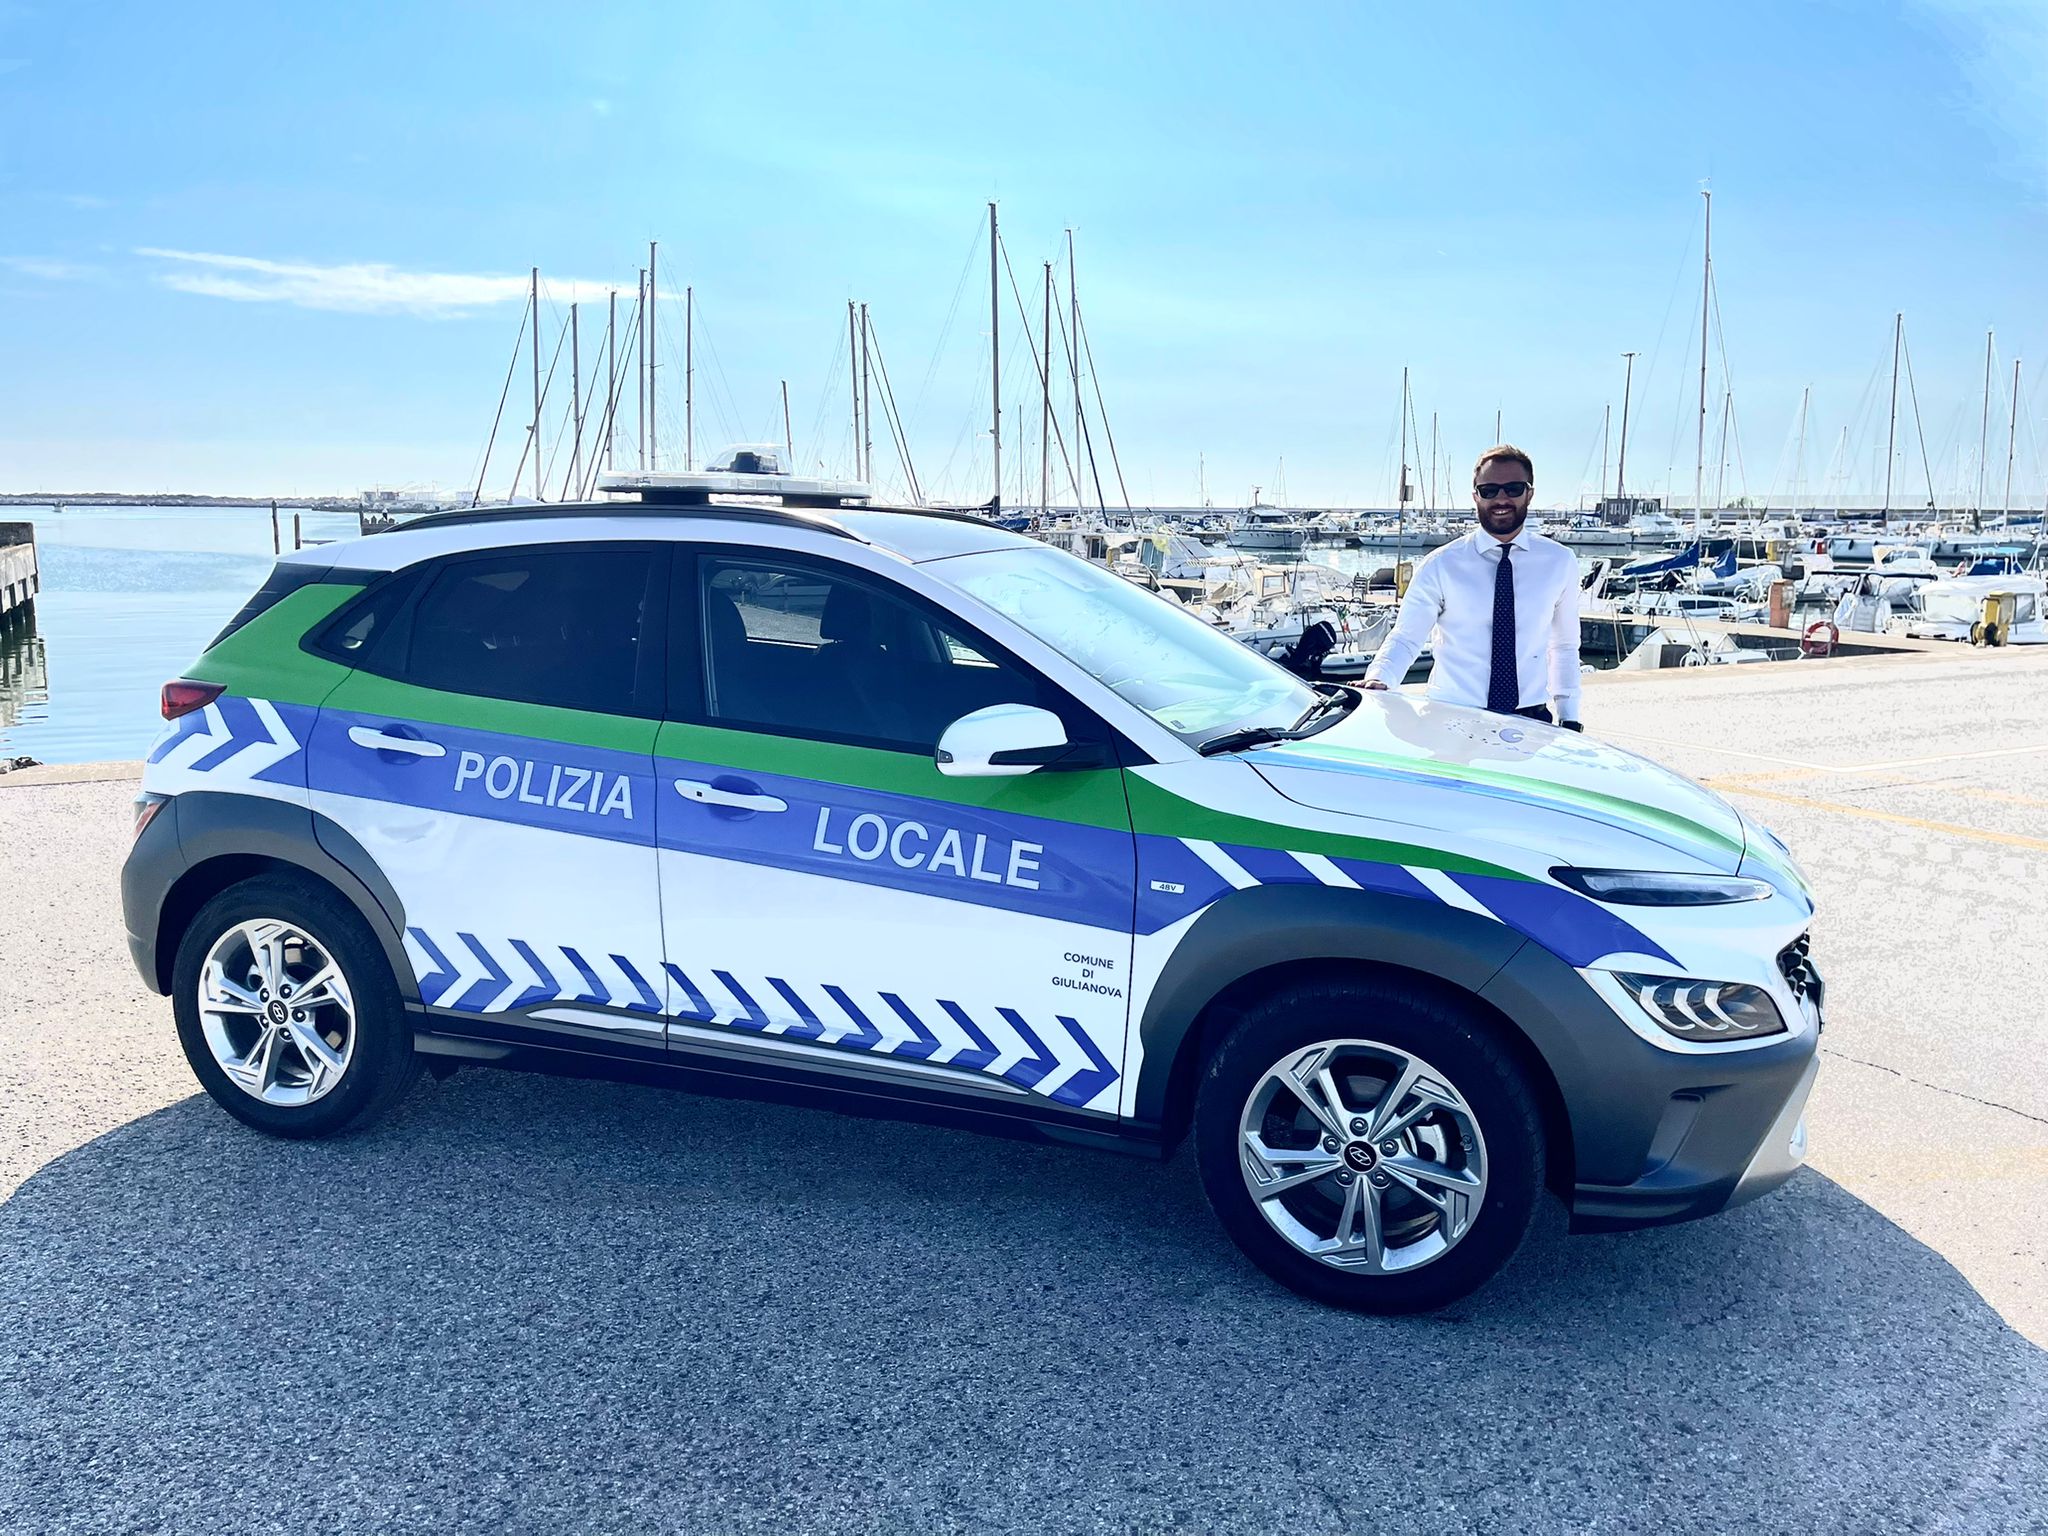 Una Hyundai Kona a motore ibrido da oggi in dotazione ai Vigili Urbani. Prosegue il rinnovamento dei veicoli a disposizione della Polizia Municipale.